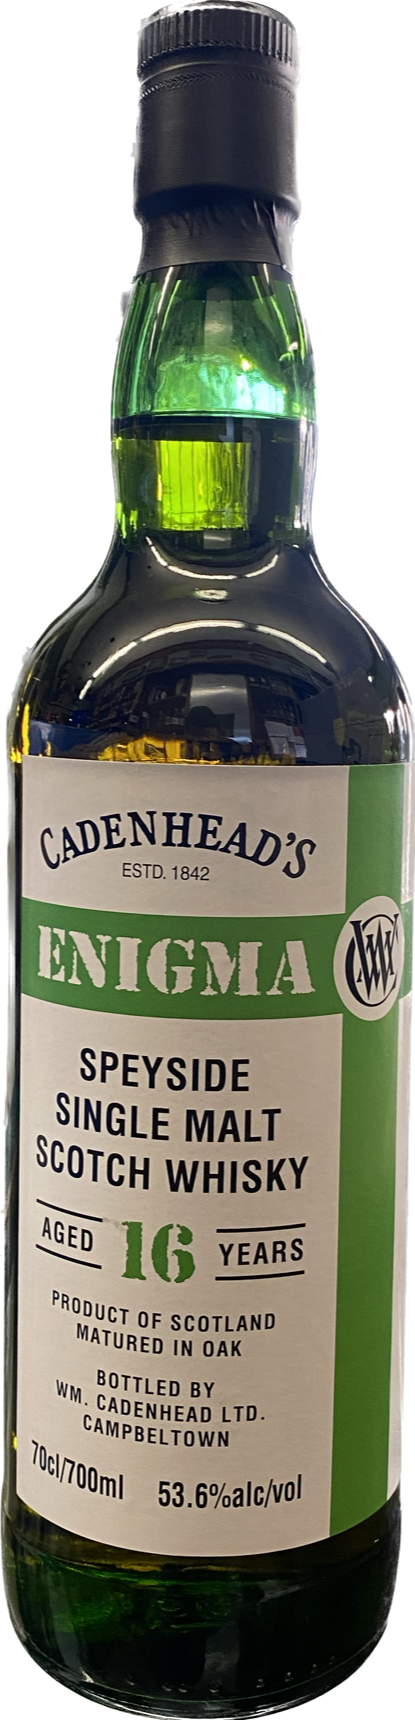 WM Cadenhead's Enigma 16 Year Old Speyside Single Malt Scotch Whisky 700 ML